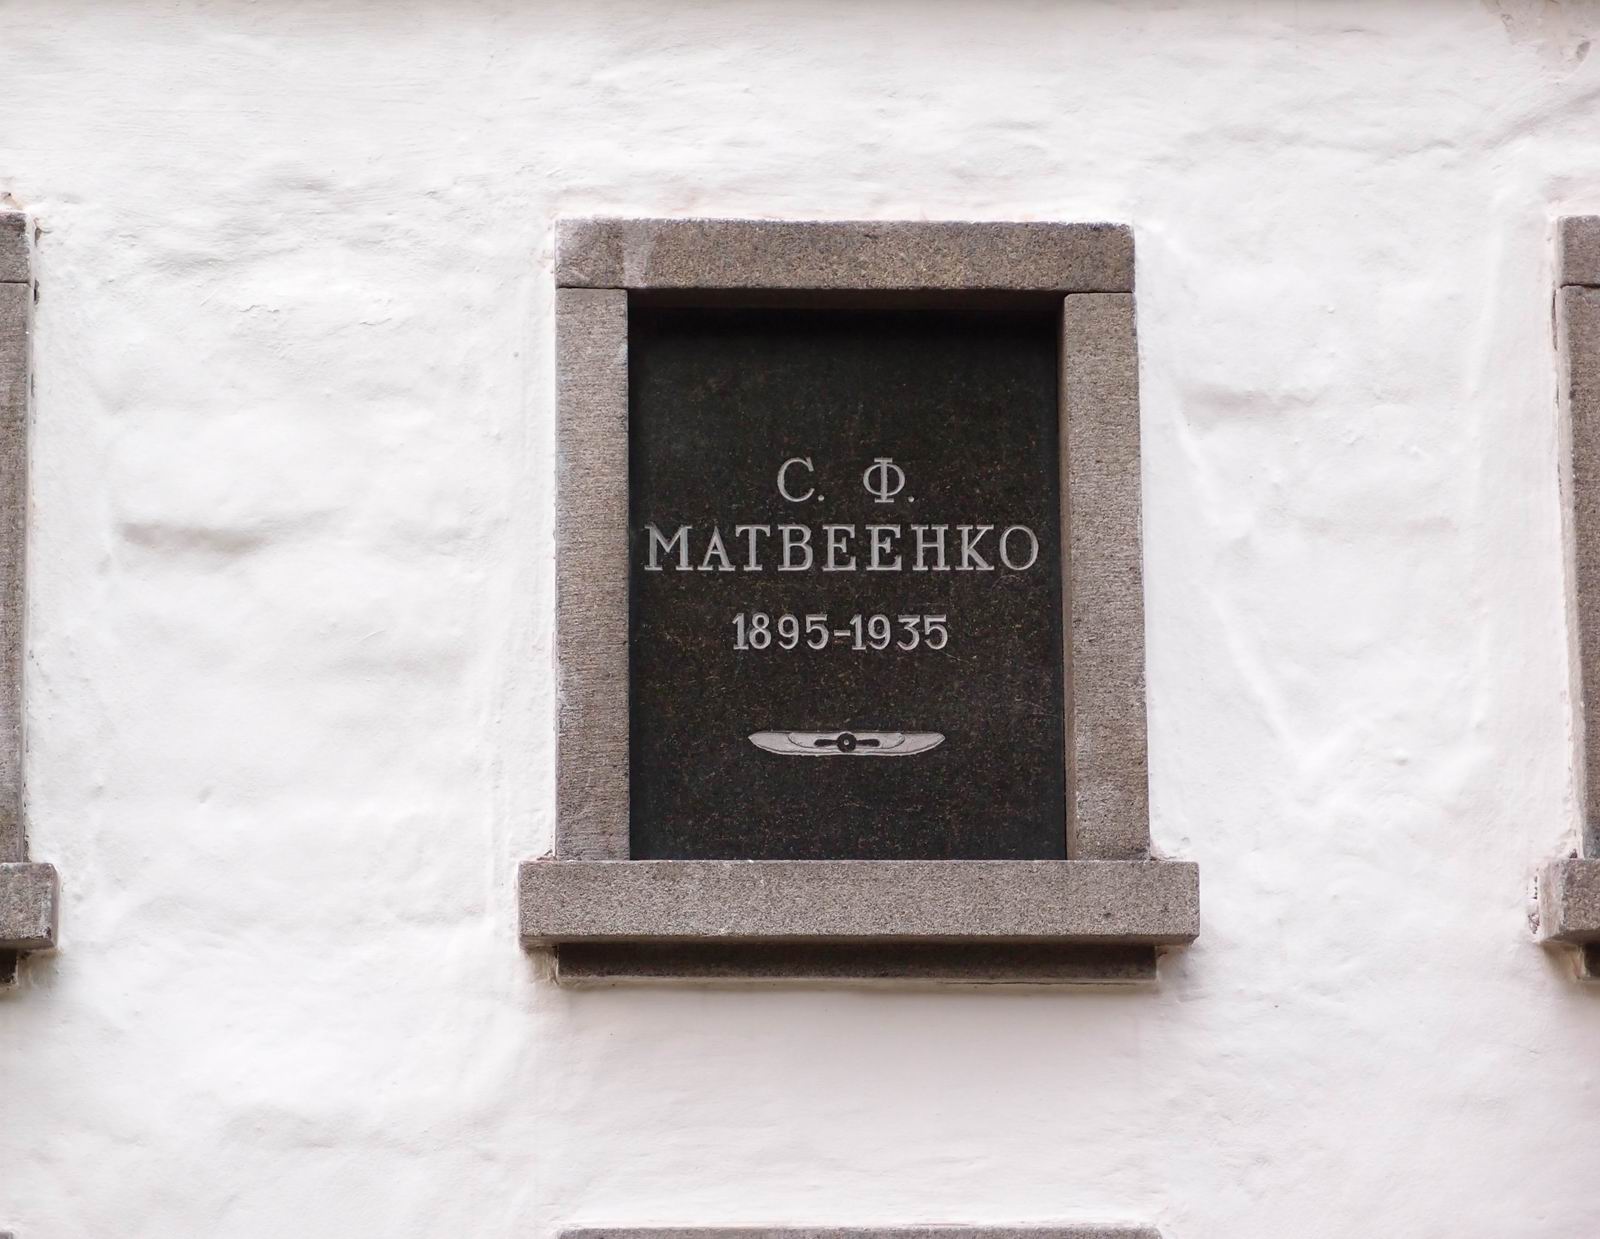 Плита на нише Матвеенко С.Ф. (1895–1935), на Новодевичьем кладбище (колумбарий [3]–3). Нажмите левую кнопку мыши, чтобы увидеть общий вид секции.